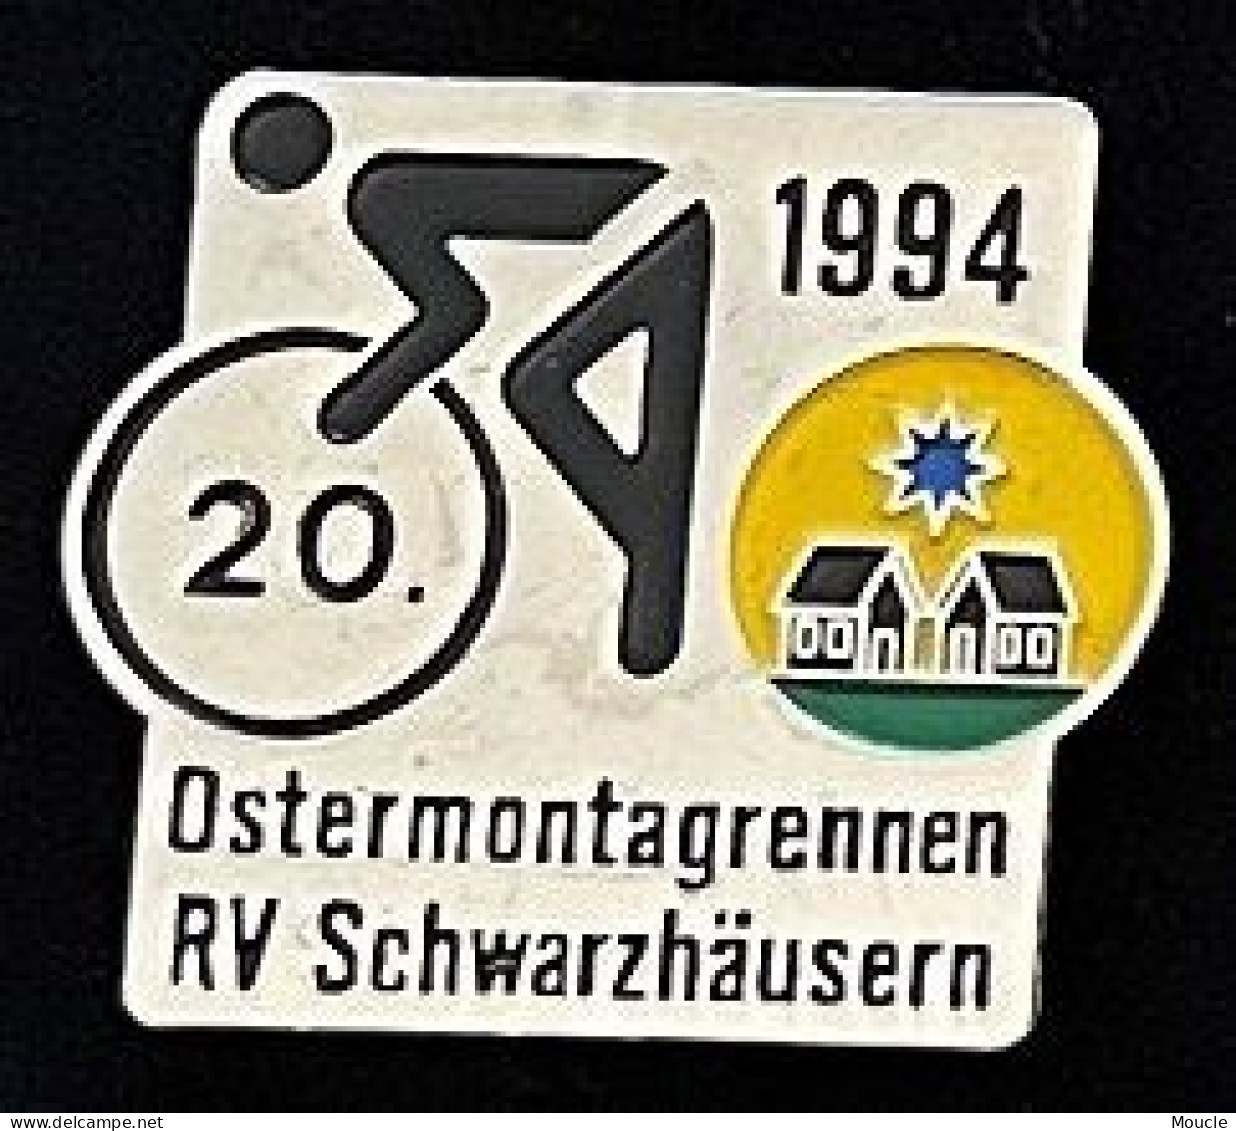 CYCLISME - VELO - BIKE - CYCLISTE - CYCLES - OSTERMONTAGGRENNEN RV SCHWARZHÄUSERN - 1994 - 20 - SUISSE - SCHWEIZ - (33) - Radsport